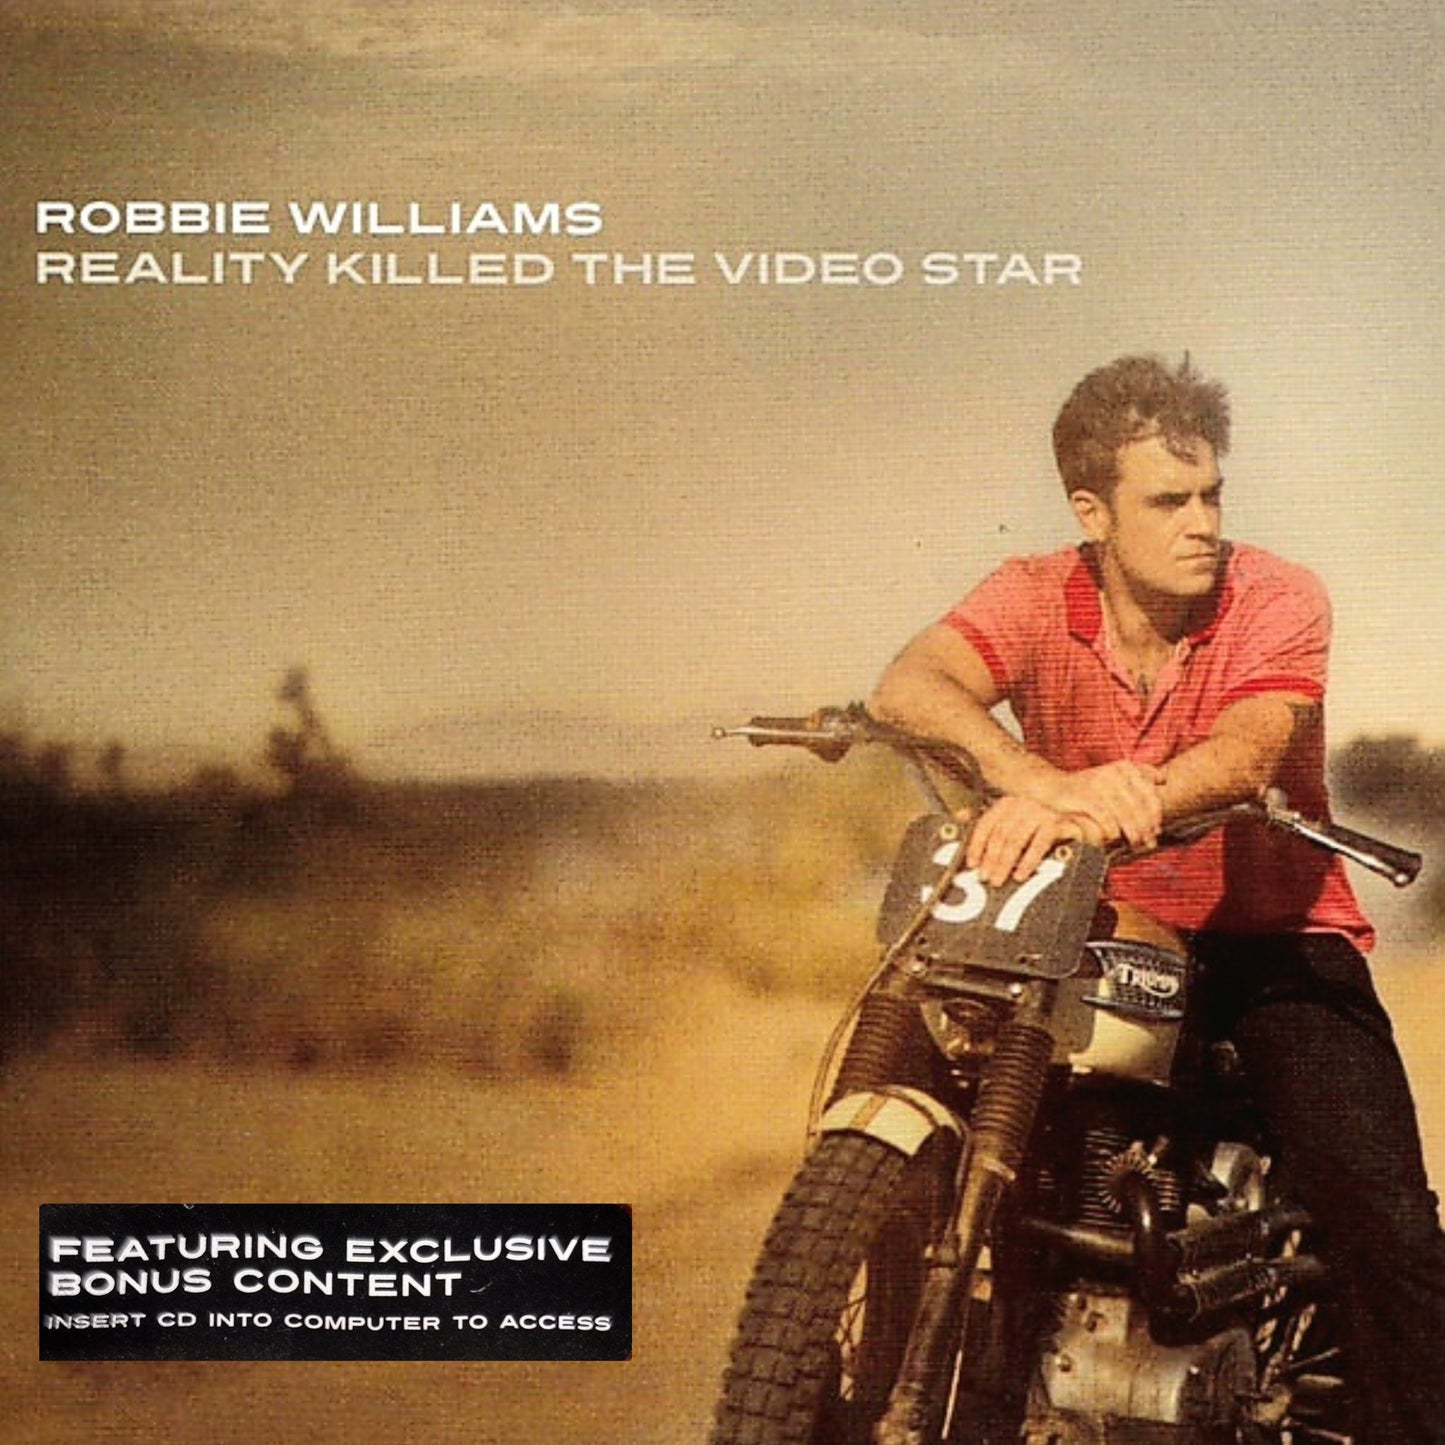 Robbie Williams: Reality Killed The Video Star - CD-Album mit erweitertem Inhalt